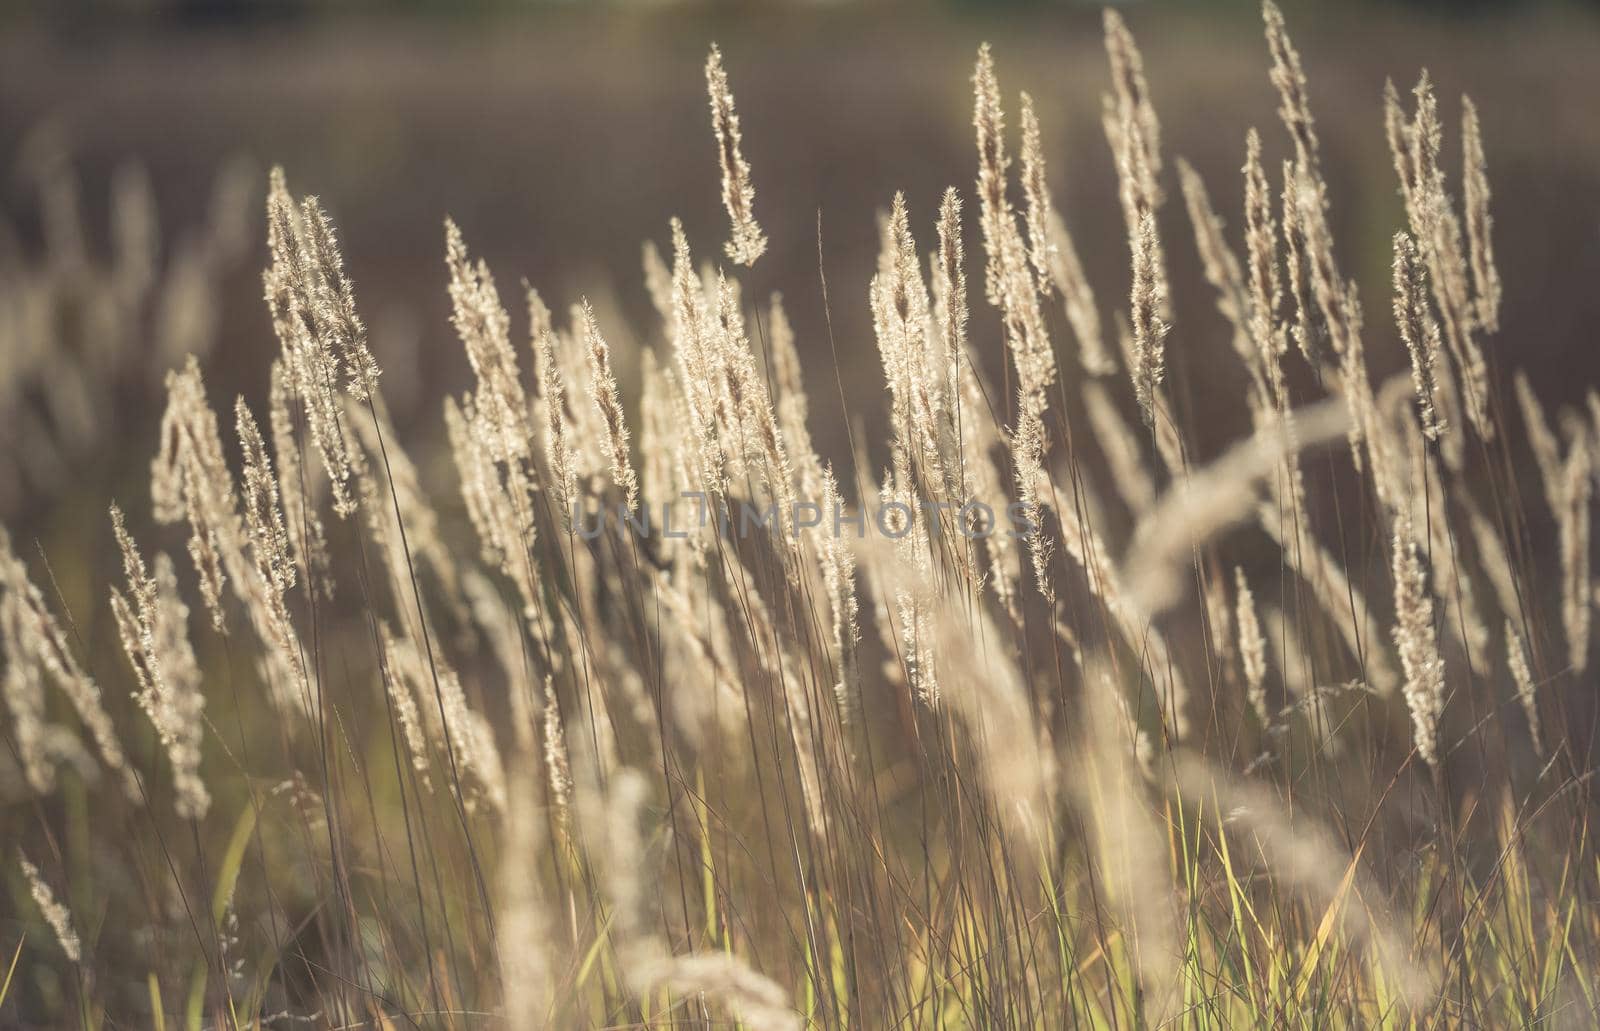 Ripe spikelets in wheat field by tan4ikk1